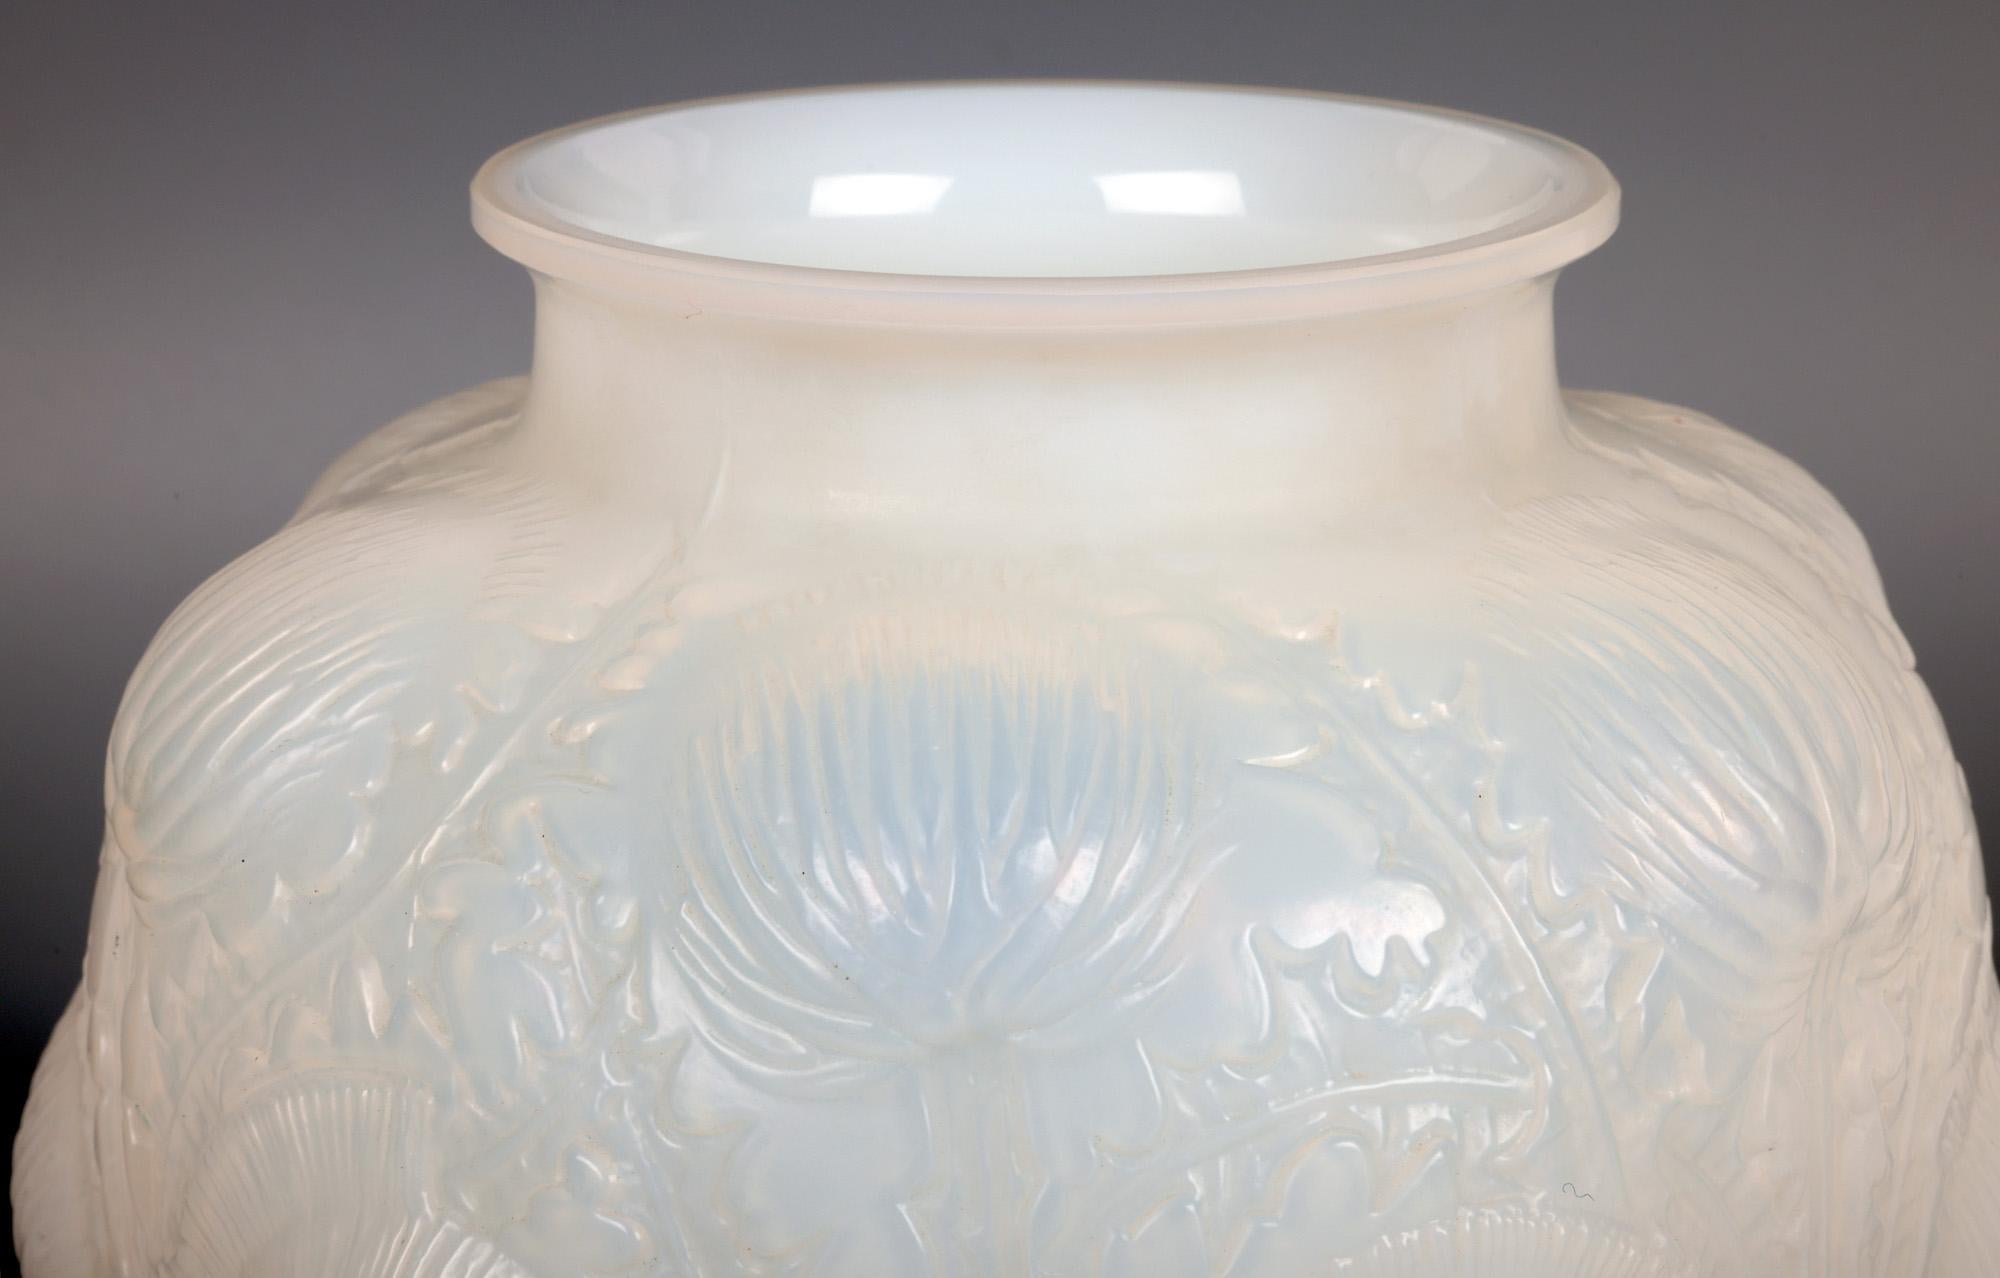 Un superbe vase Domrémy (créé en 1926) en verre opalescent de René Lalique (français, 1860-1945) datant d'environ 1926. Le vase repose sur un étroit pied rond et plat poli, avec une base en retrait, et est décoré de chardons moulés sur des tiges